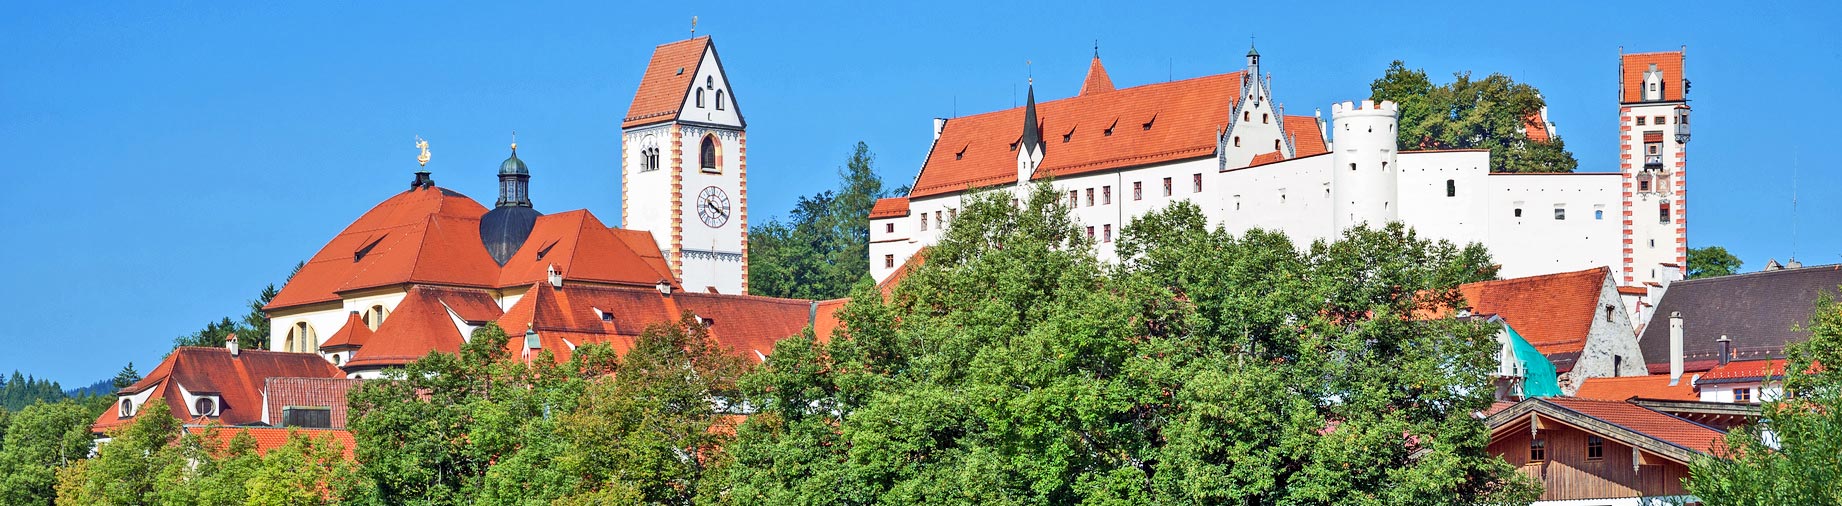 Fssen im Allgu - Blick vom Lech auf das Kloster St. Mang und Hohes Schloss